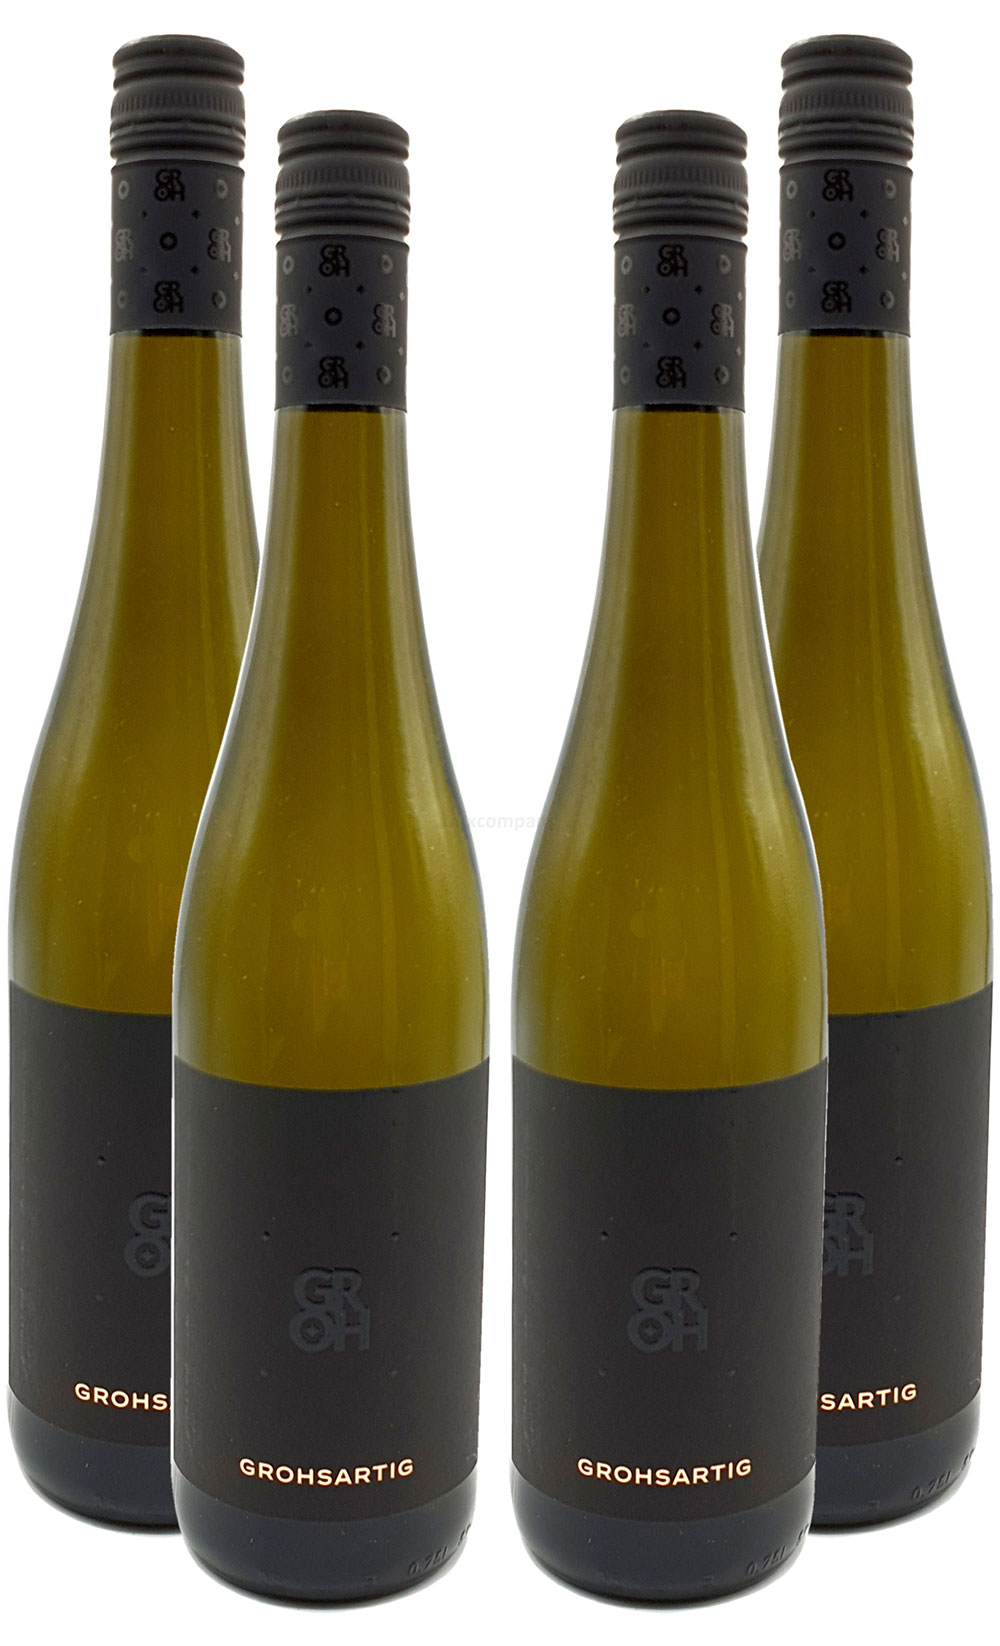 Groh - 4er Set Grohsartig Weissburgunder Chardonnay Trocken - Deutscher Qualitätswein 0,75L (12,5% Vol) -[Enthält Sulfite]